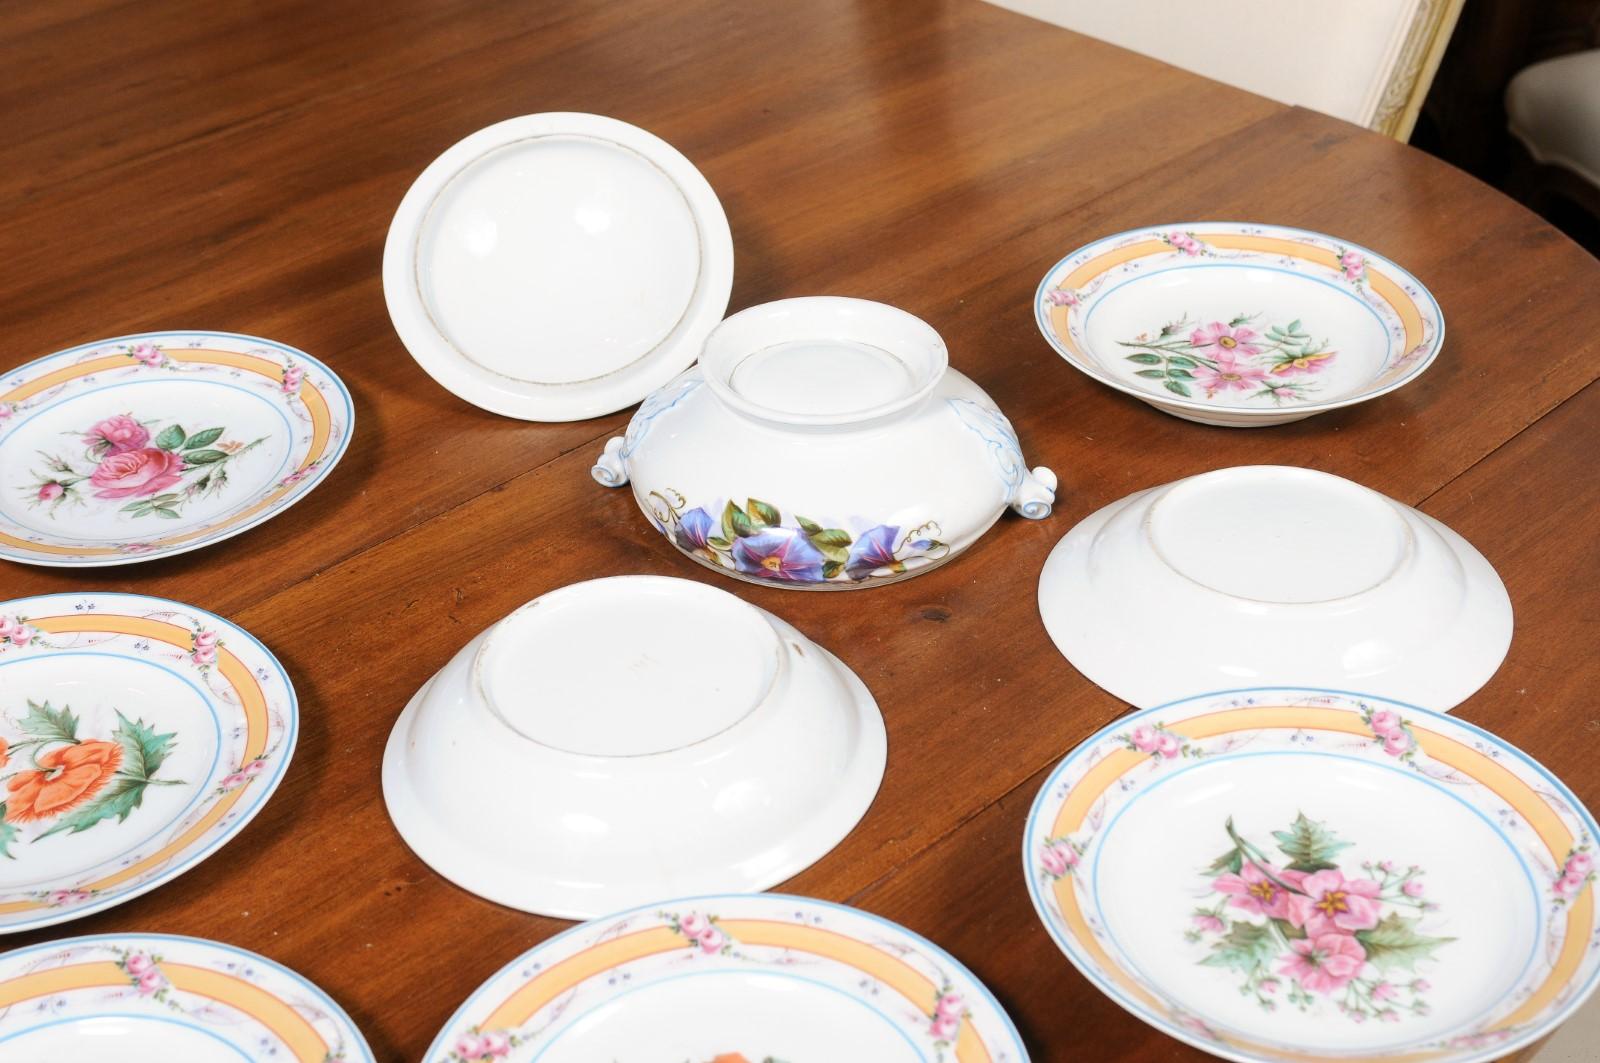 Porcelaine de Paris 19th Century Floral Dish Set with Casserole and Plates For Sale 9